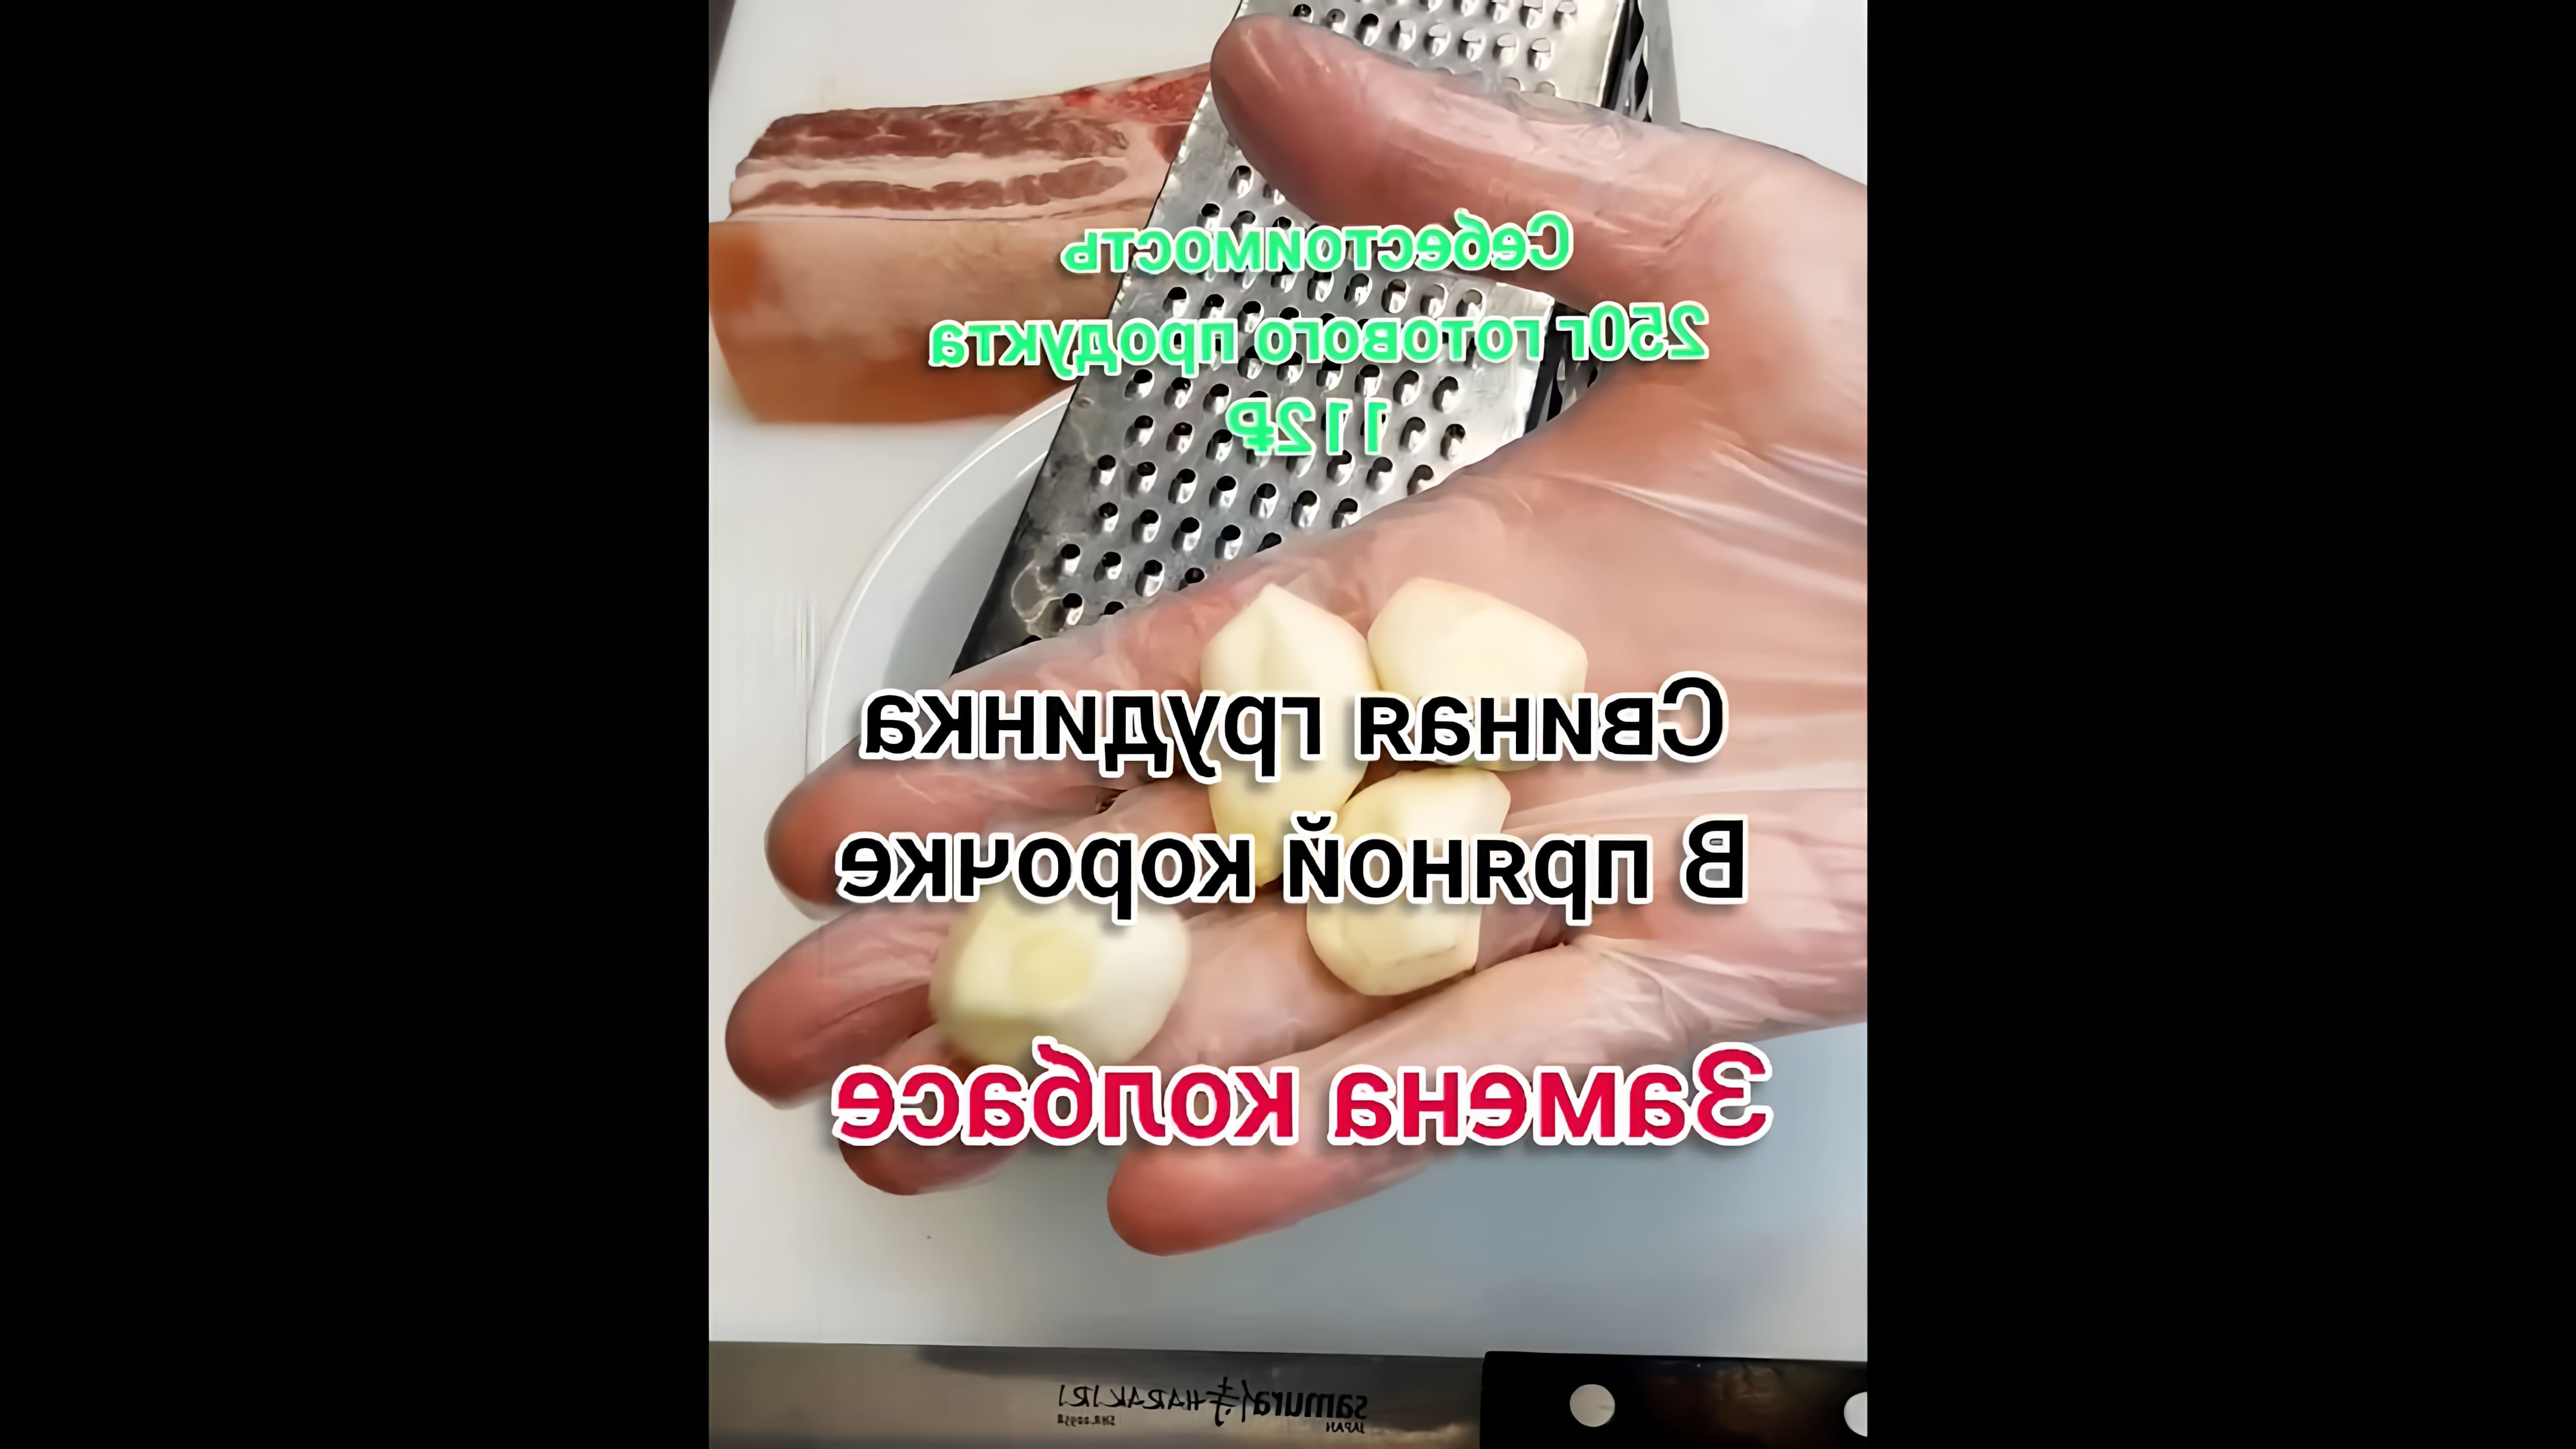 В этом видео демонстрируется процесс приготовления запечённой свиной грудинки в пряной корочке